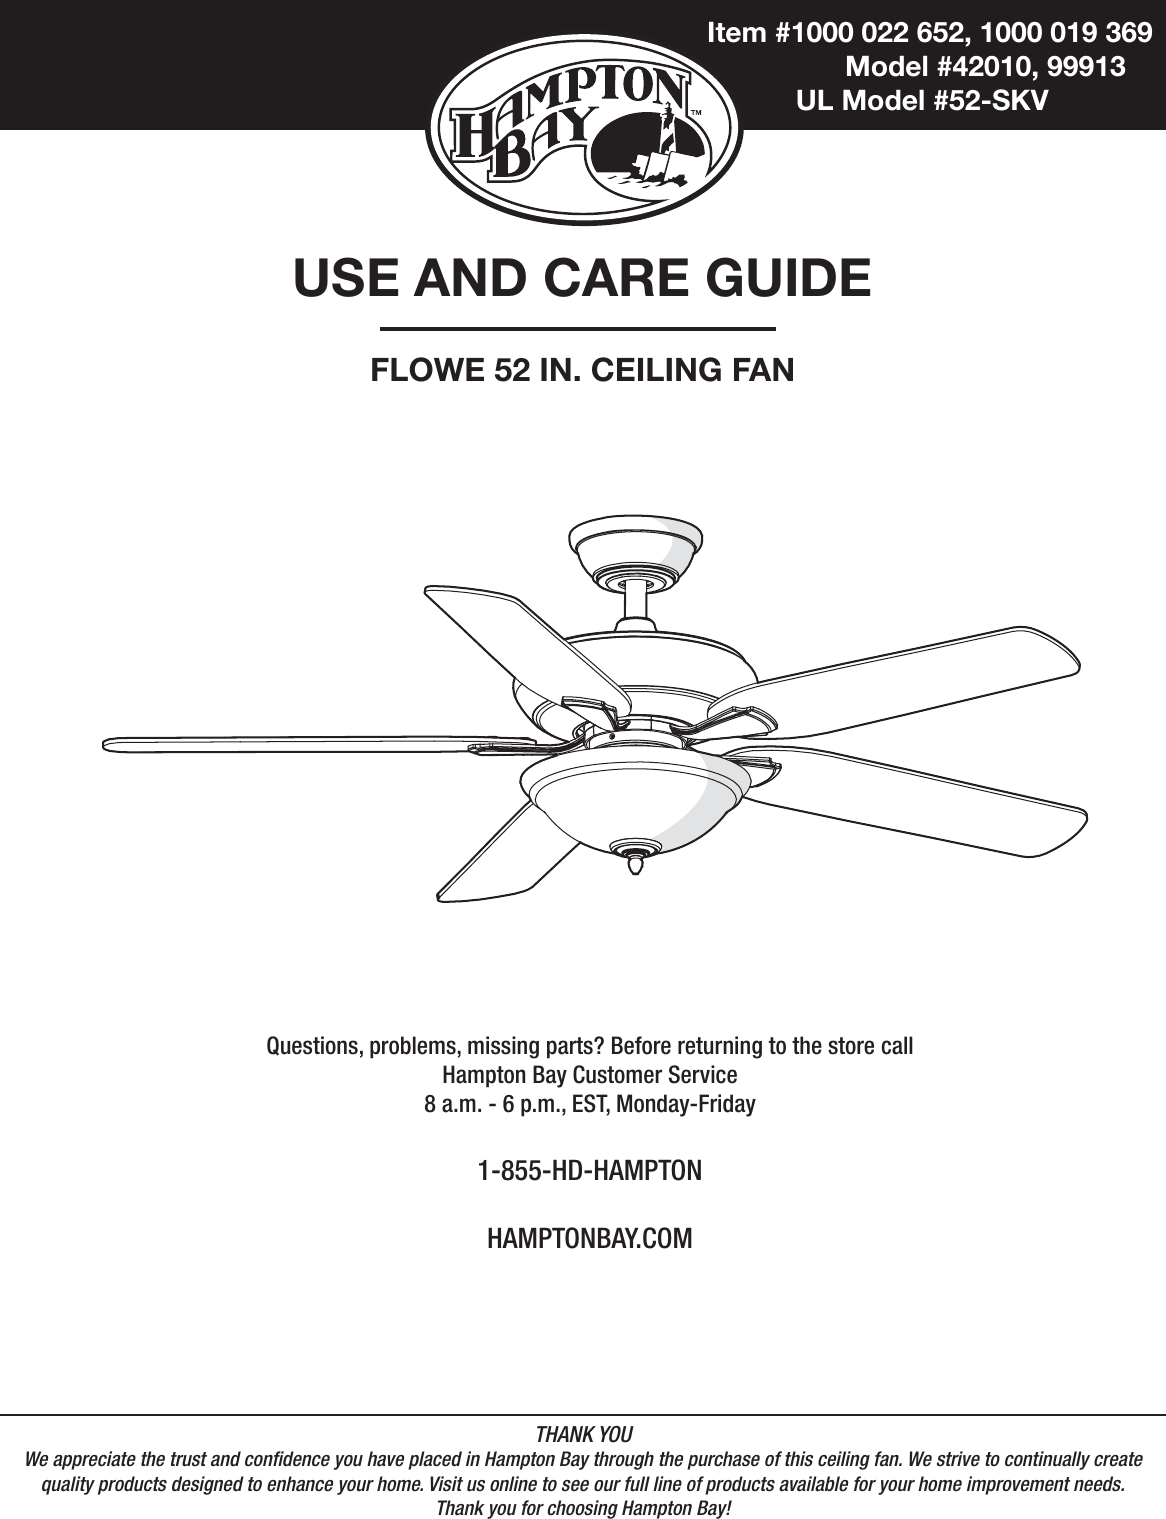 Hampton Bay Ceiling Fan Manual - Insteon Fan Control